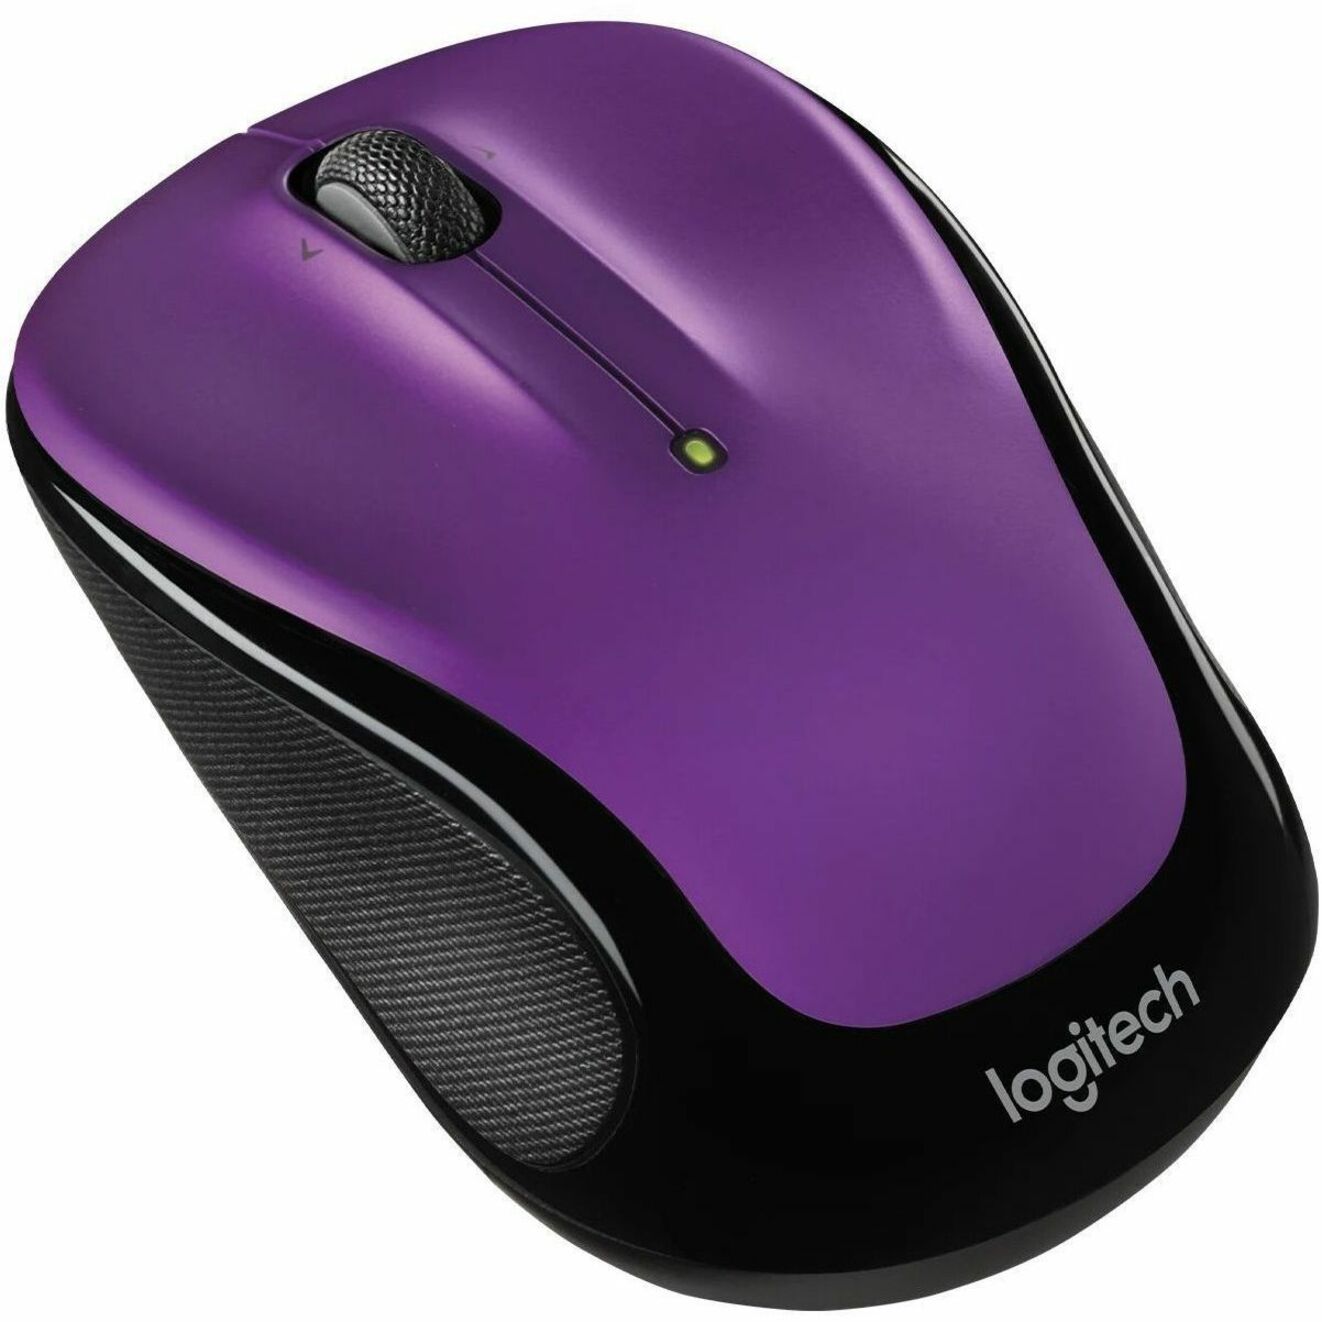 Logitech 910-006826 M325S Mouse, Vivid Violet Wireless Mouse